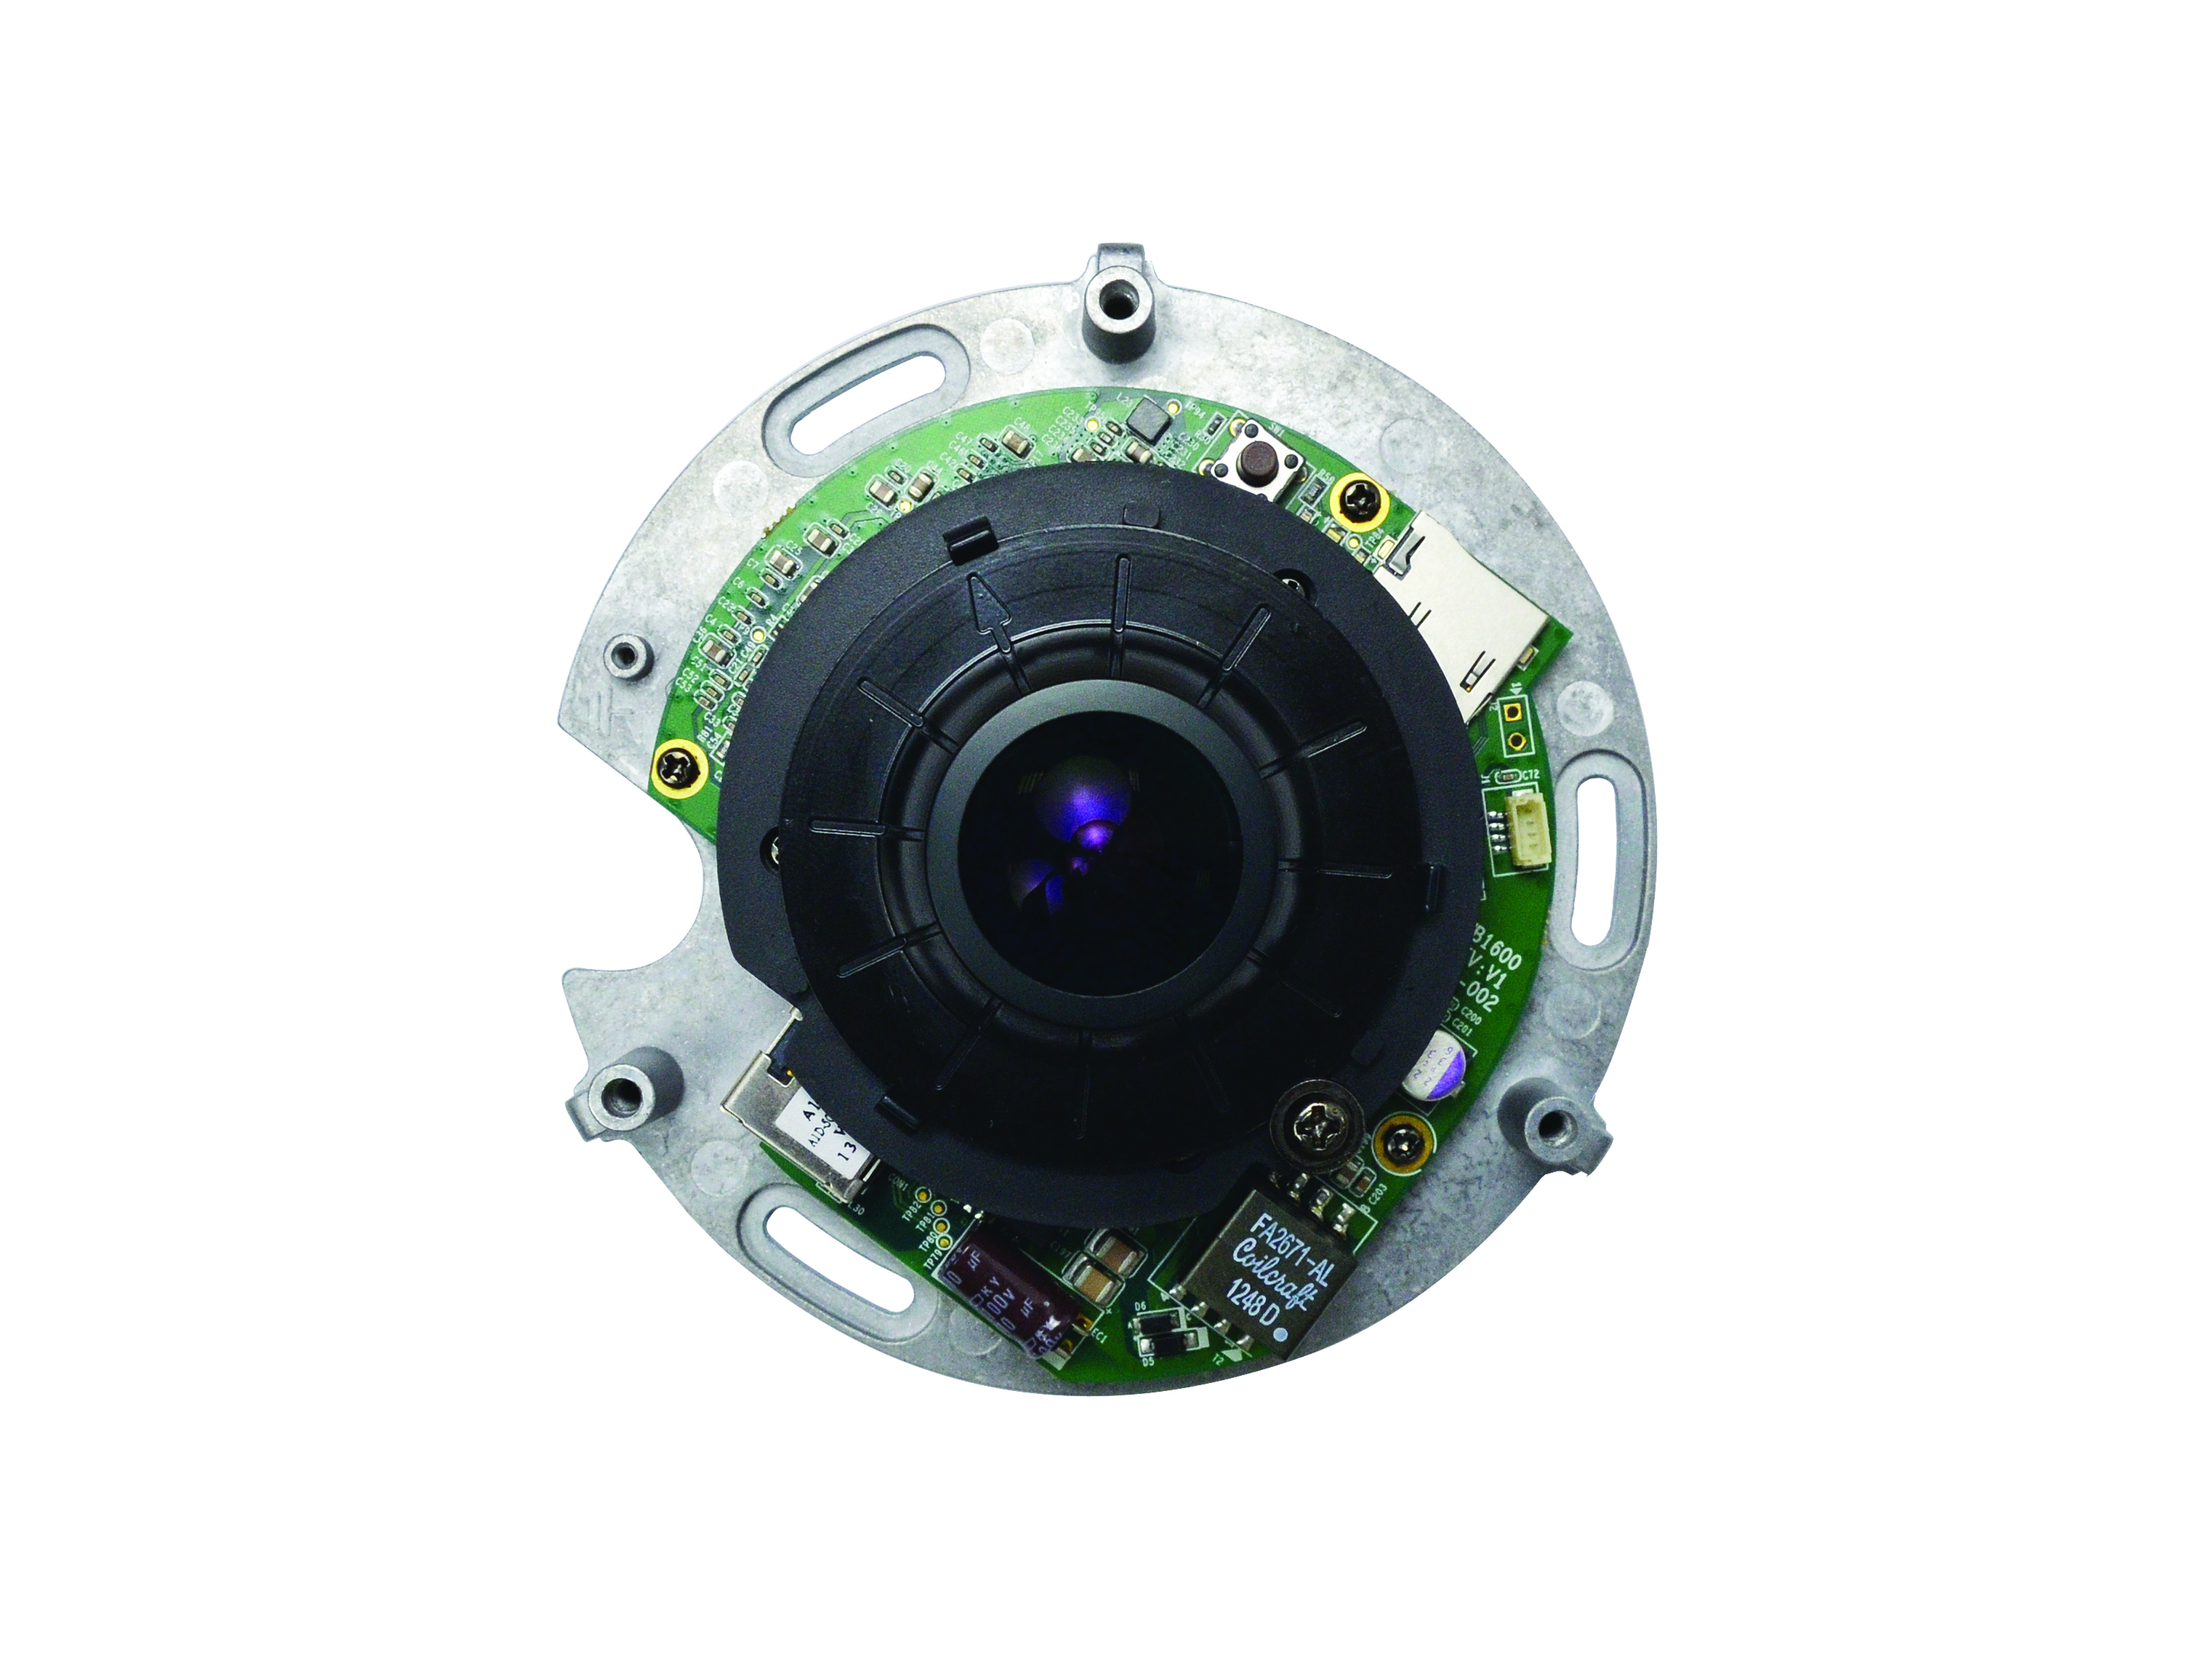 LevelOne FCS-3092 - Panoramakamera - Kuppel - vandalismusgeschützt